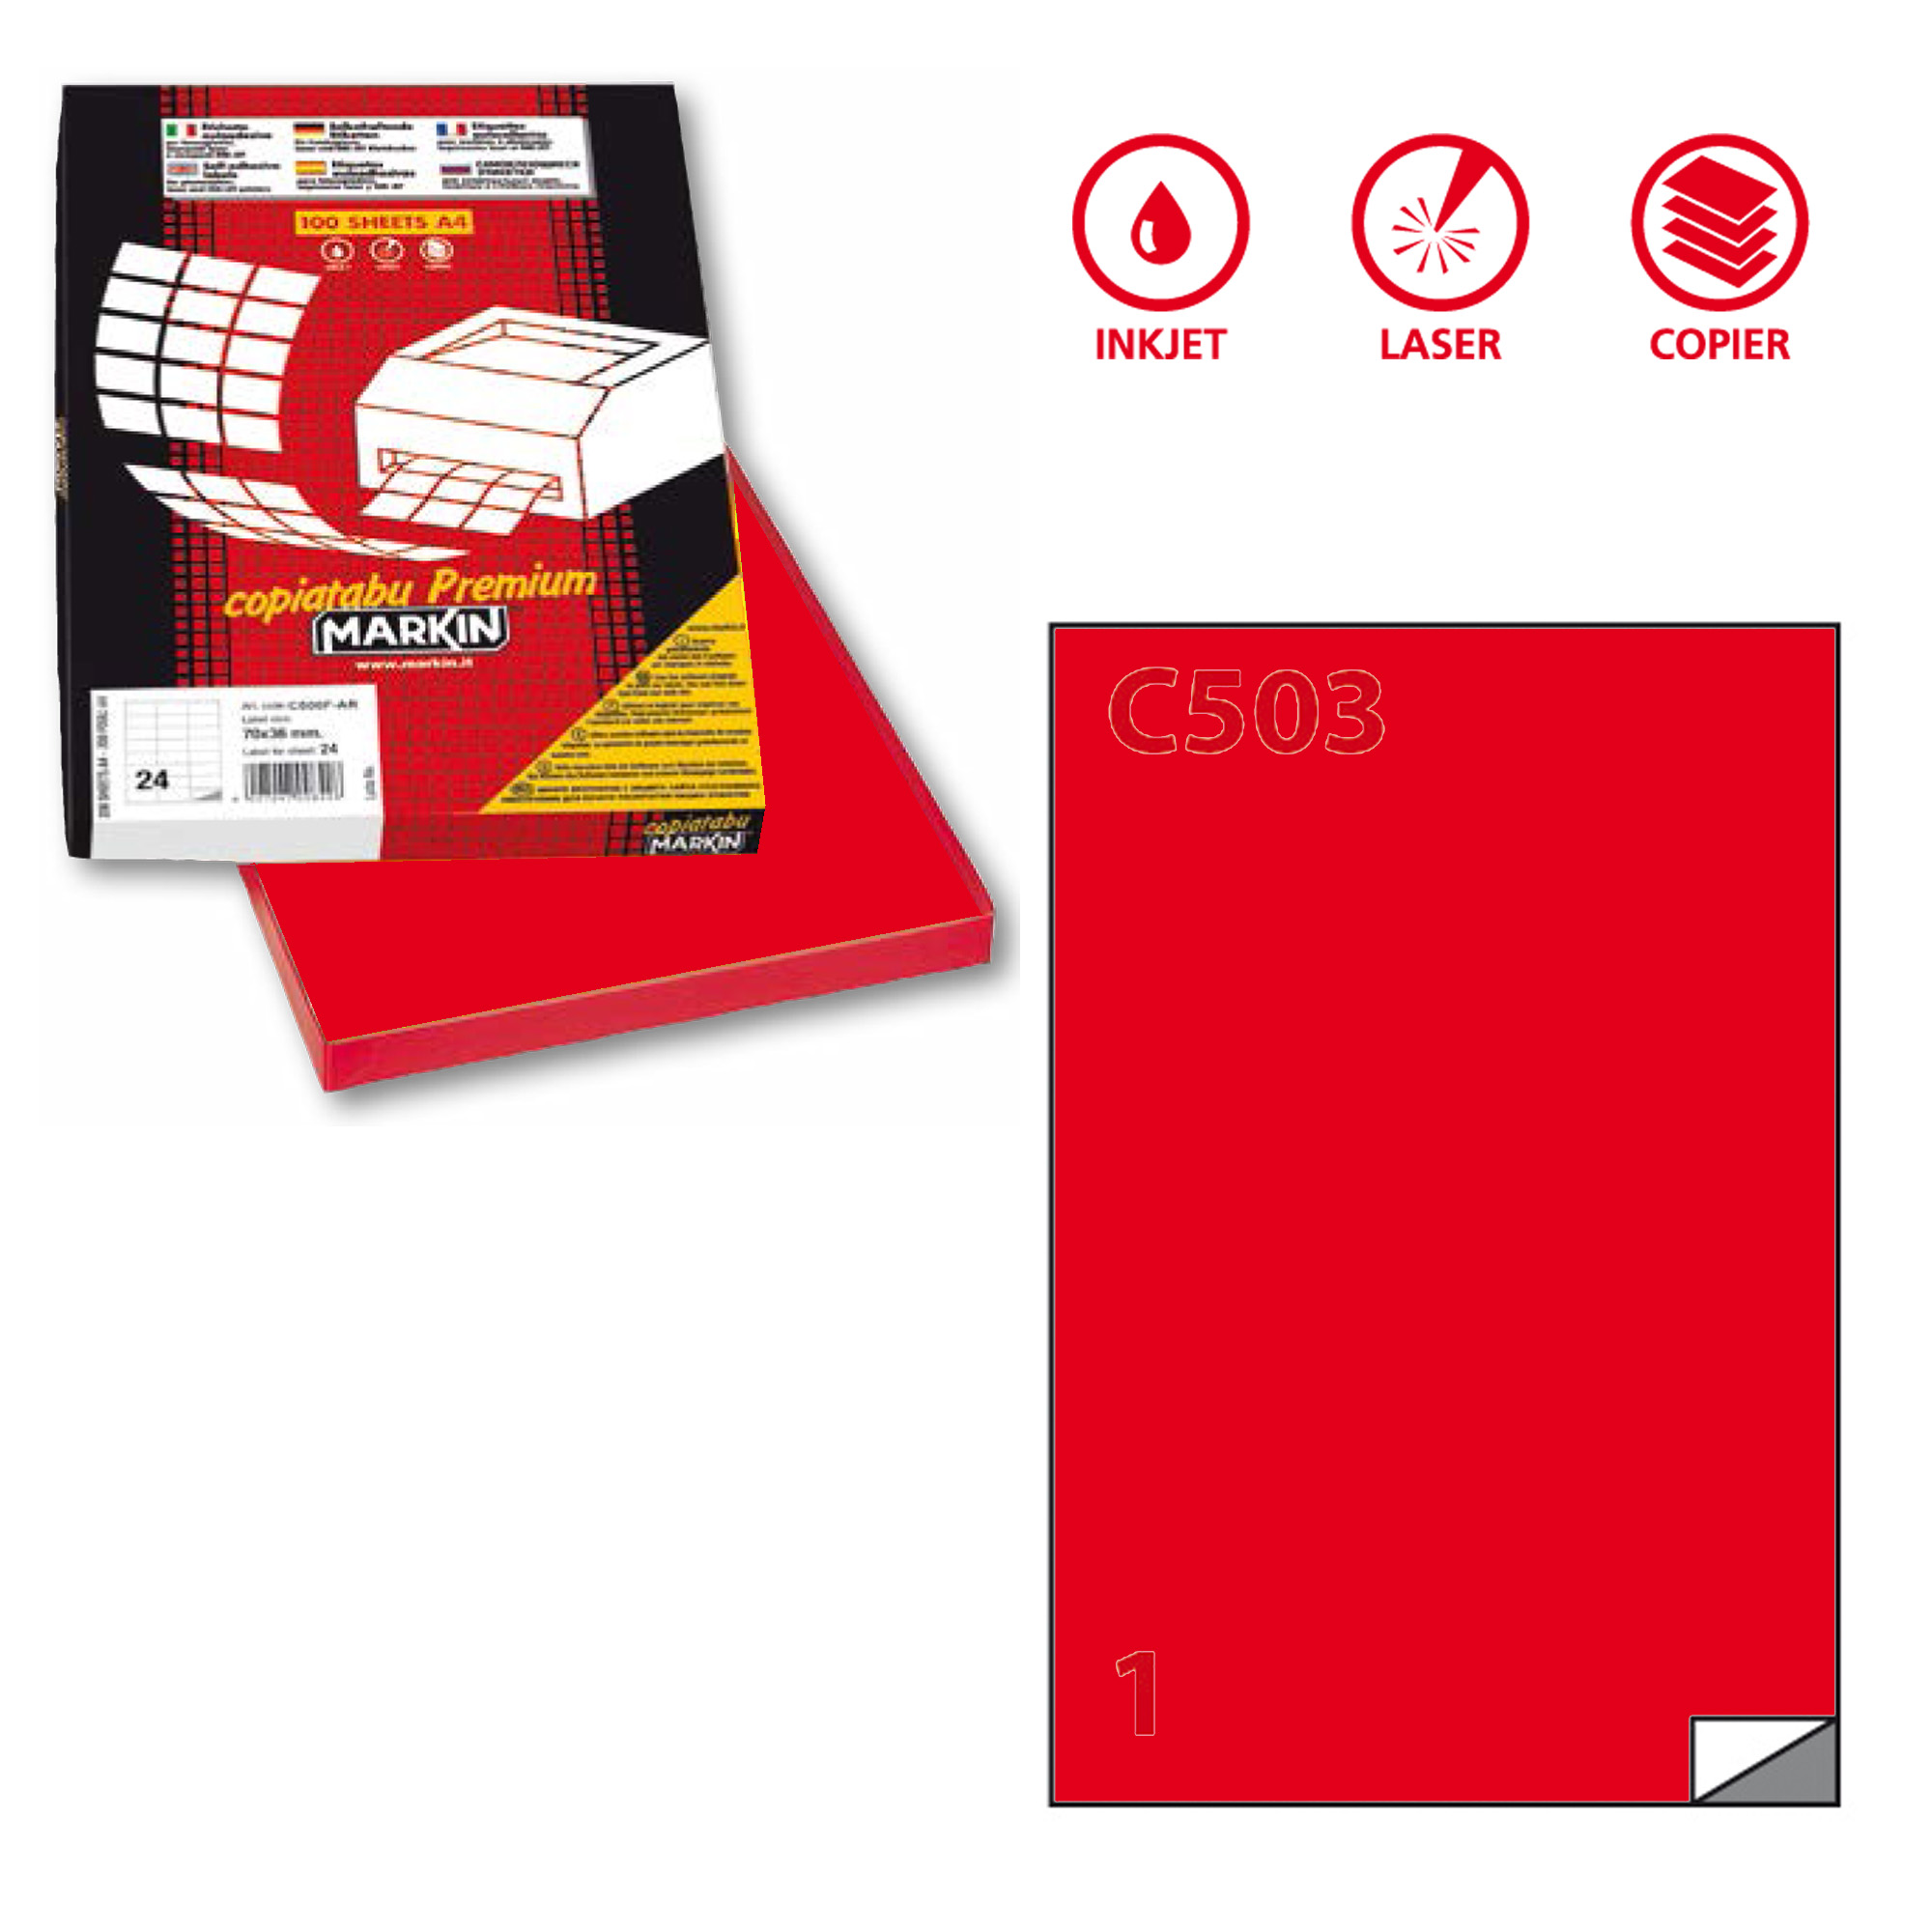 Etichetta adesiva C503 - permanente - 210x297 mm - 1 etichetta per foglio - rosso - Markin - scatola 100 fogli A4